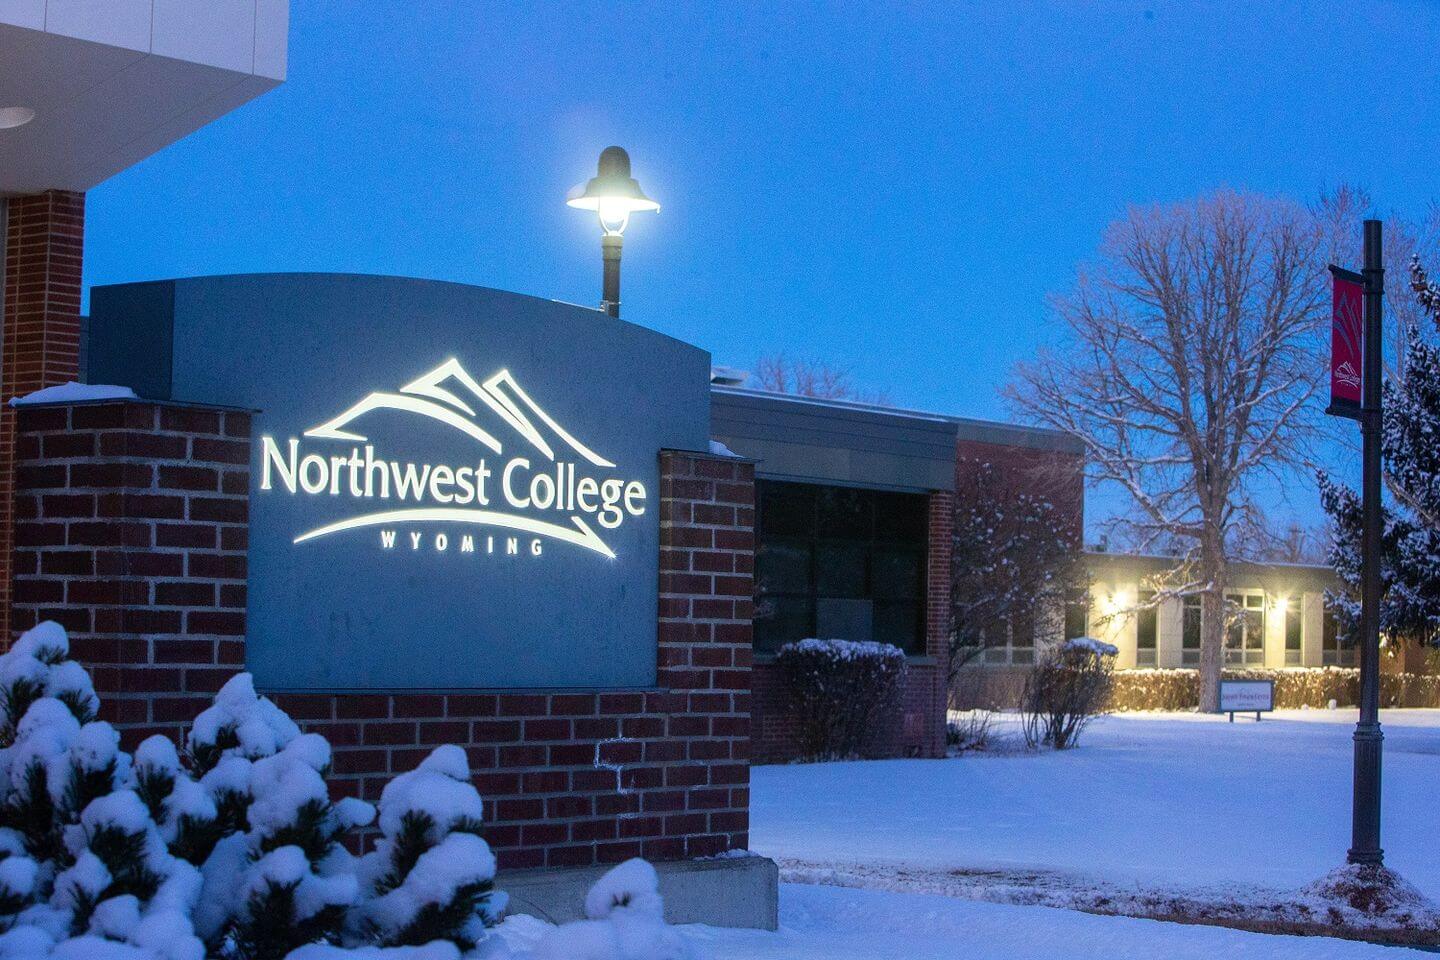 Northwest College